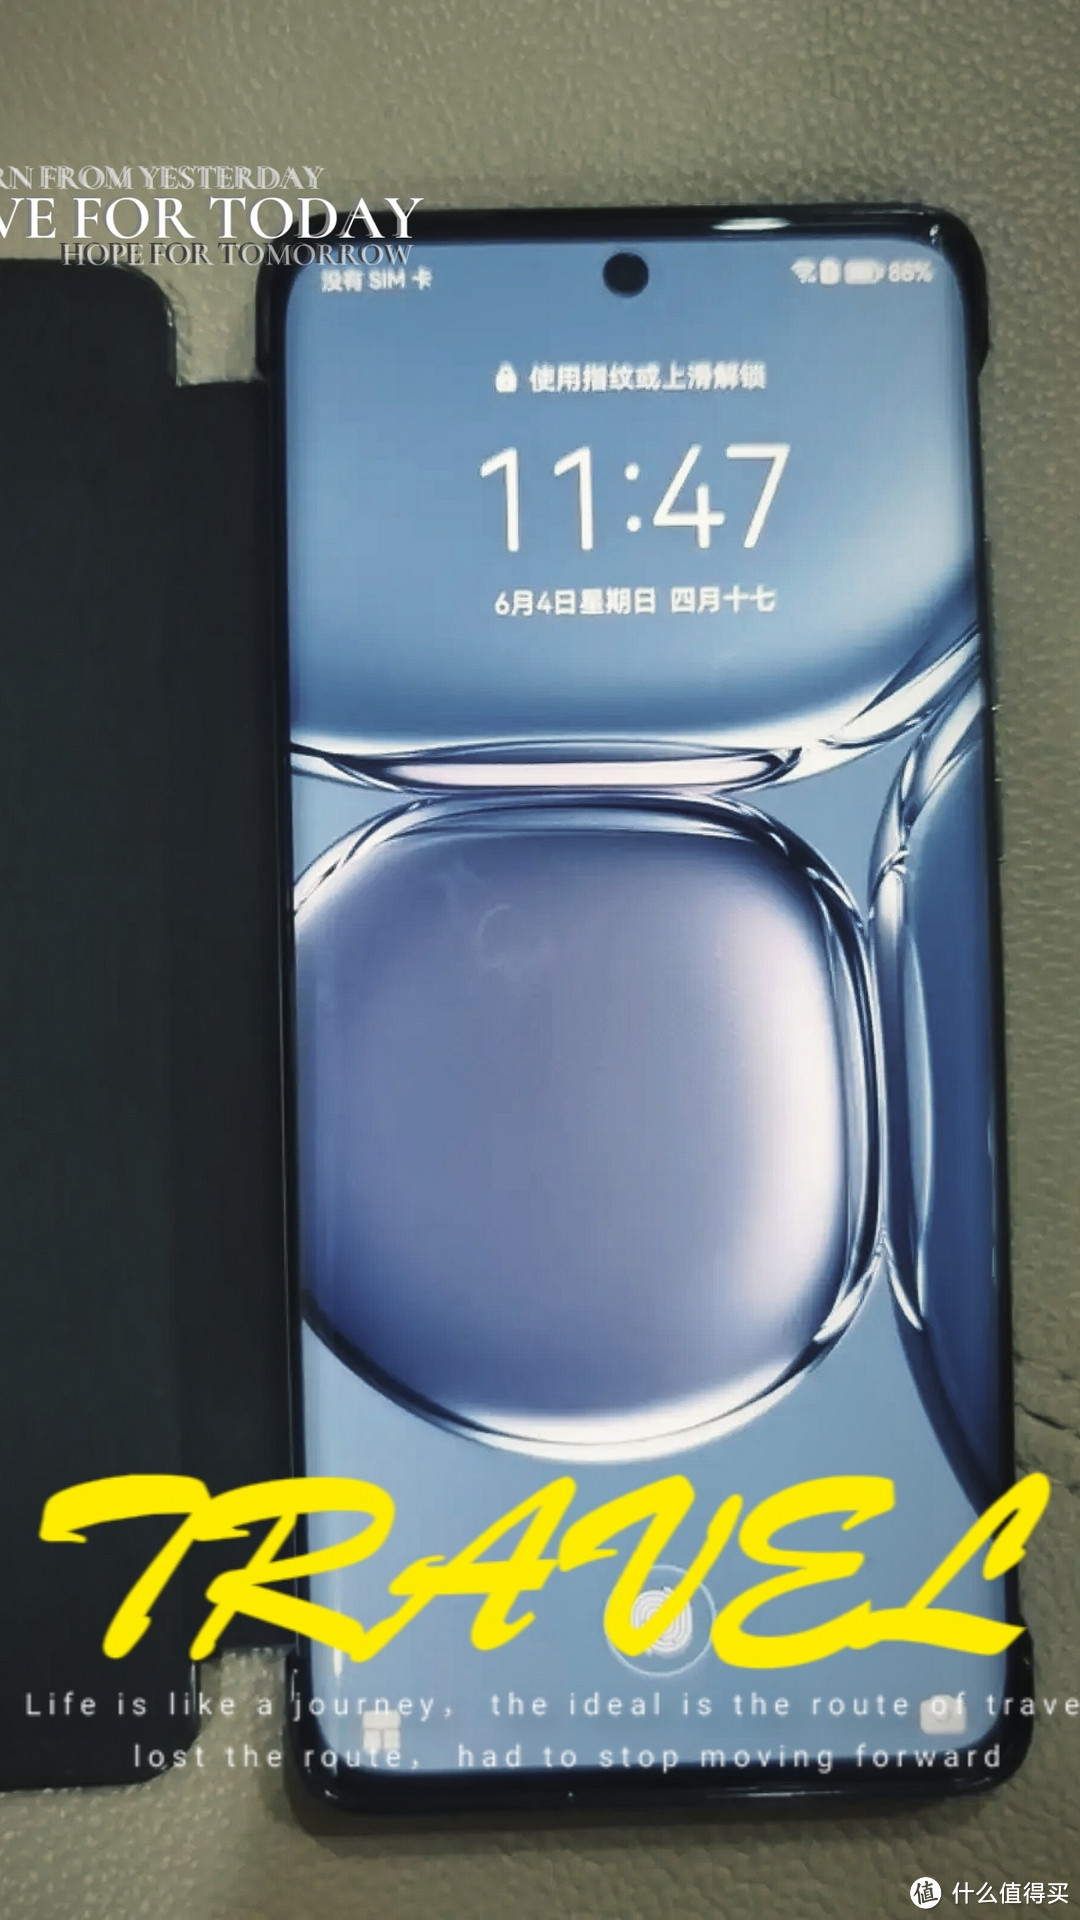 5G 时代，华为 P50 Pro 引领手机创新潮流!